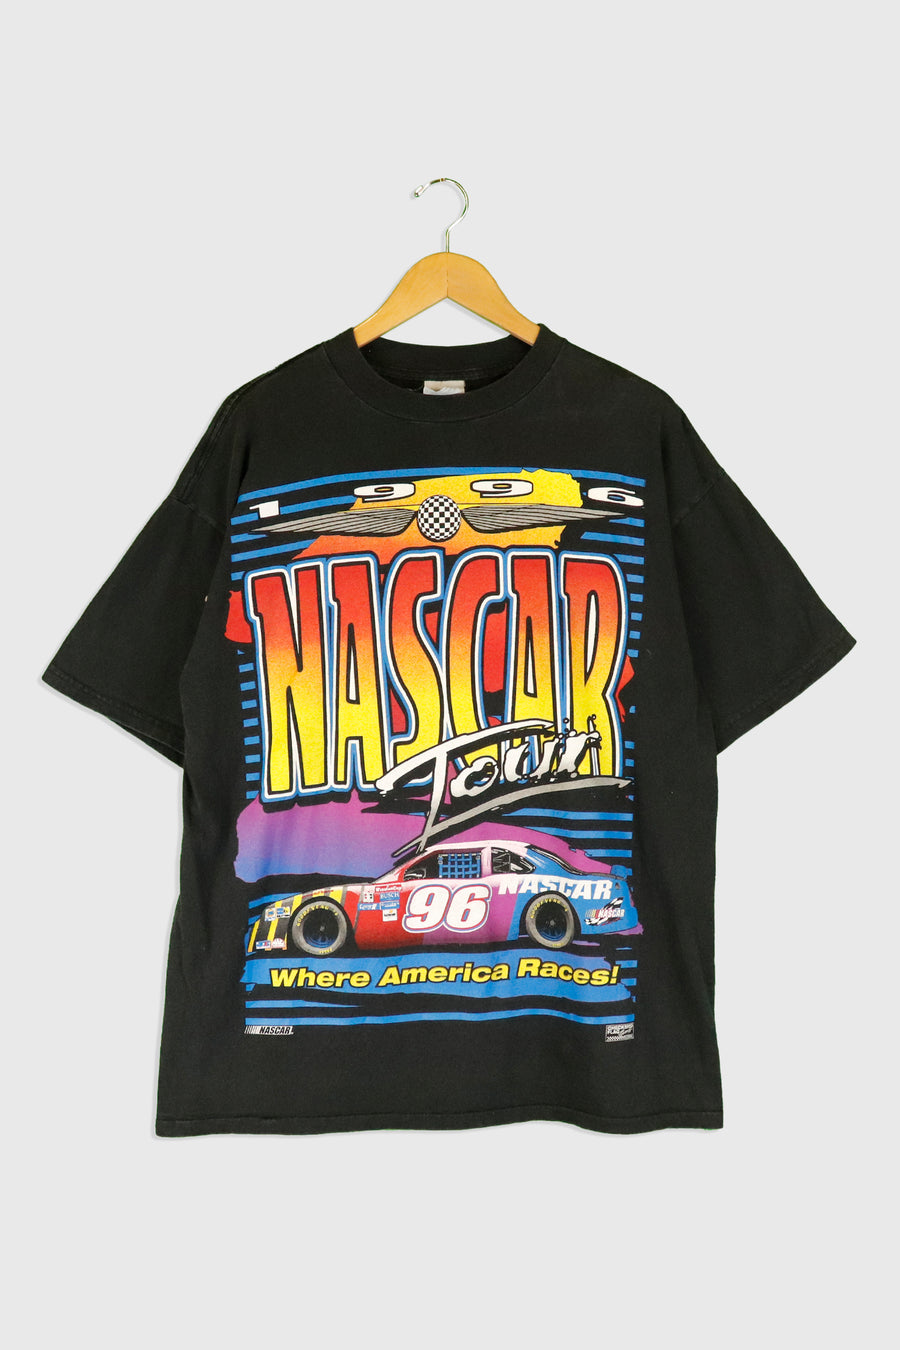 Vintage 1996 Nascar Tour USA Racing T Shirt Sz XL